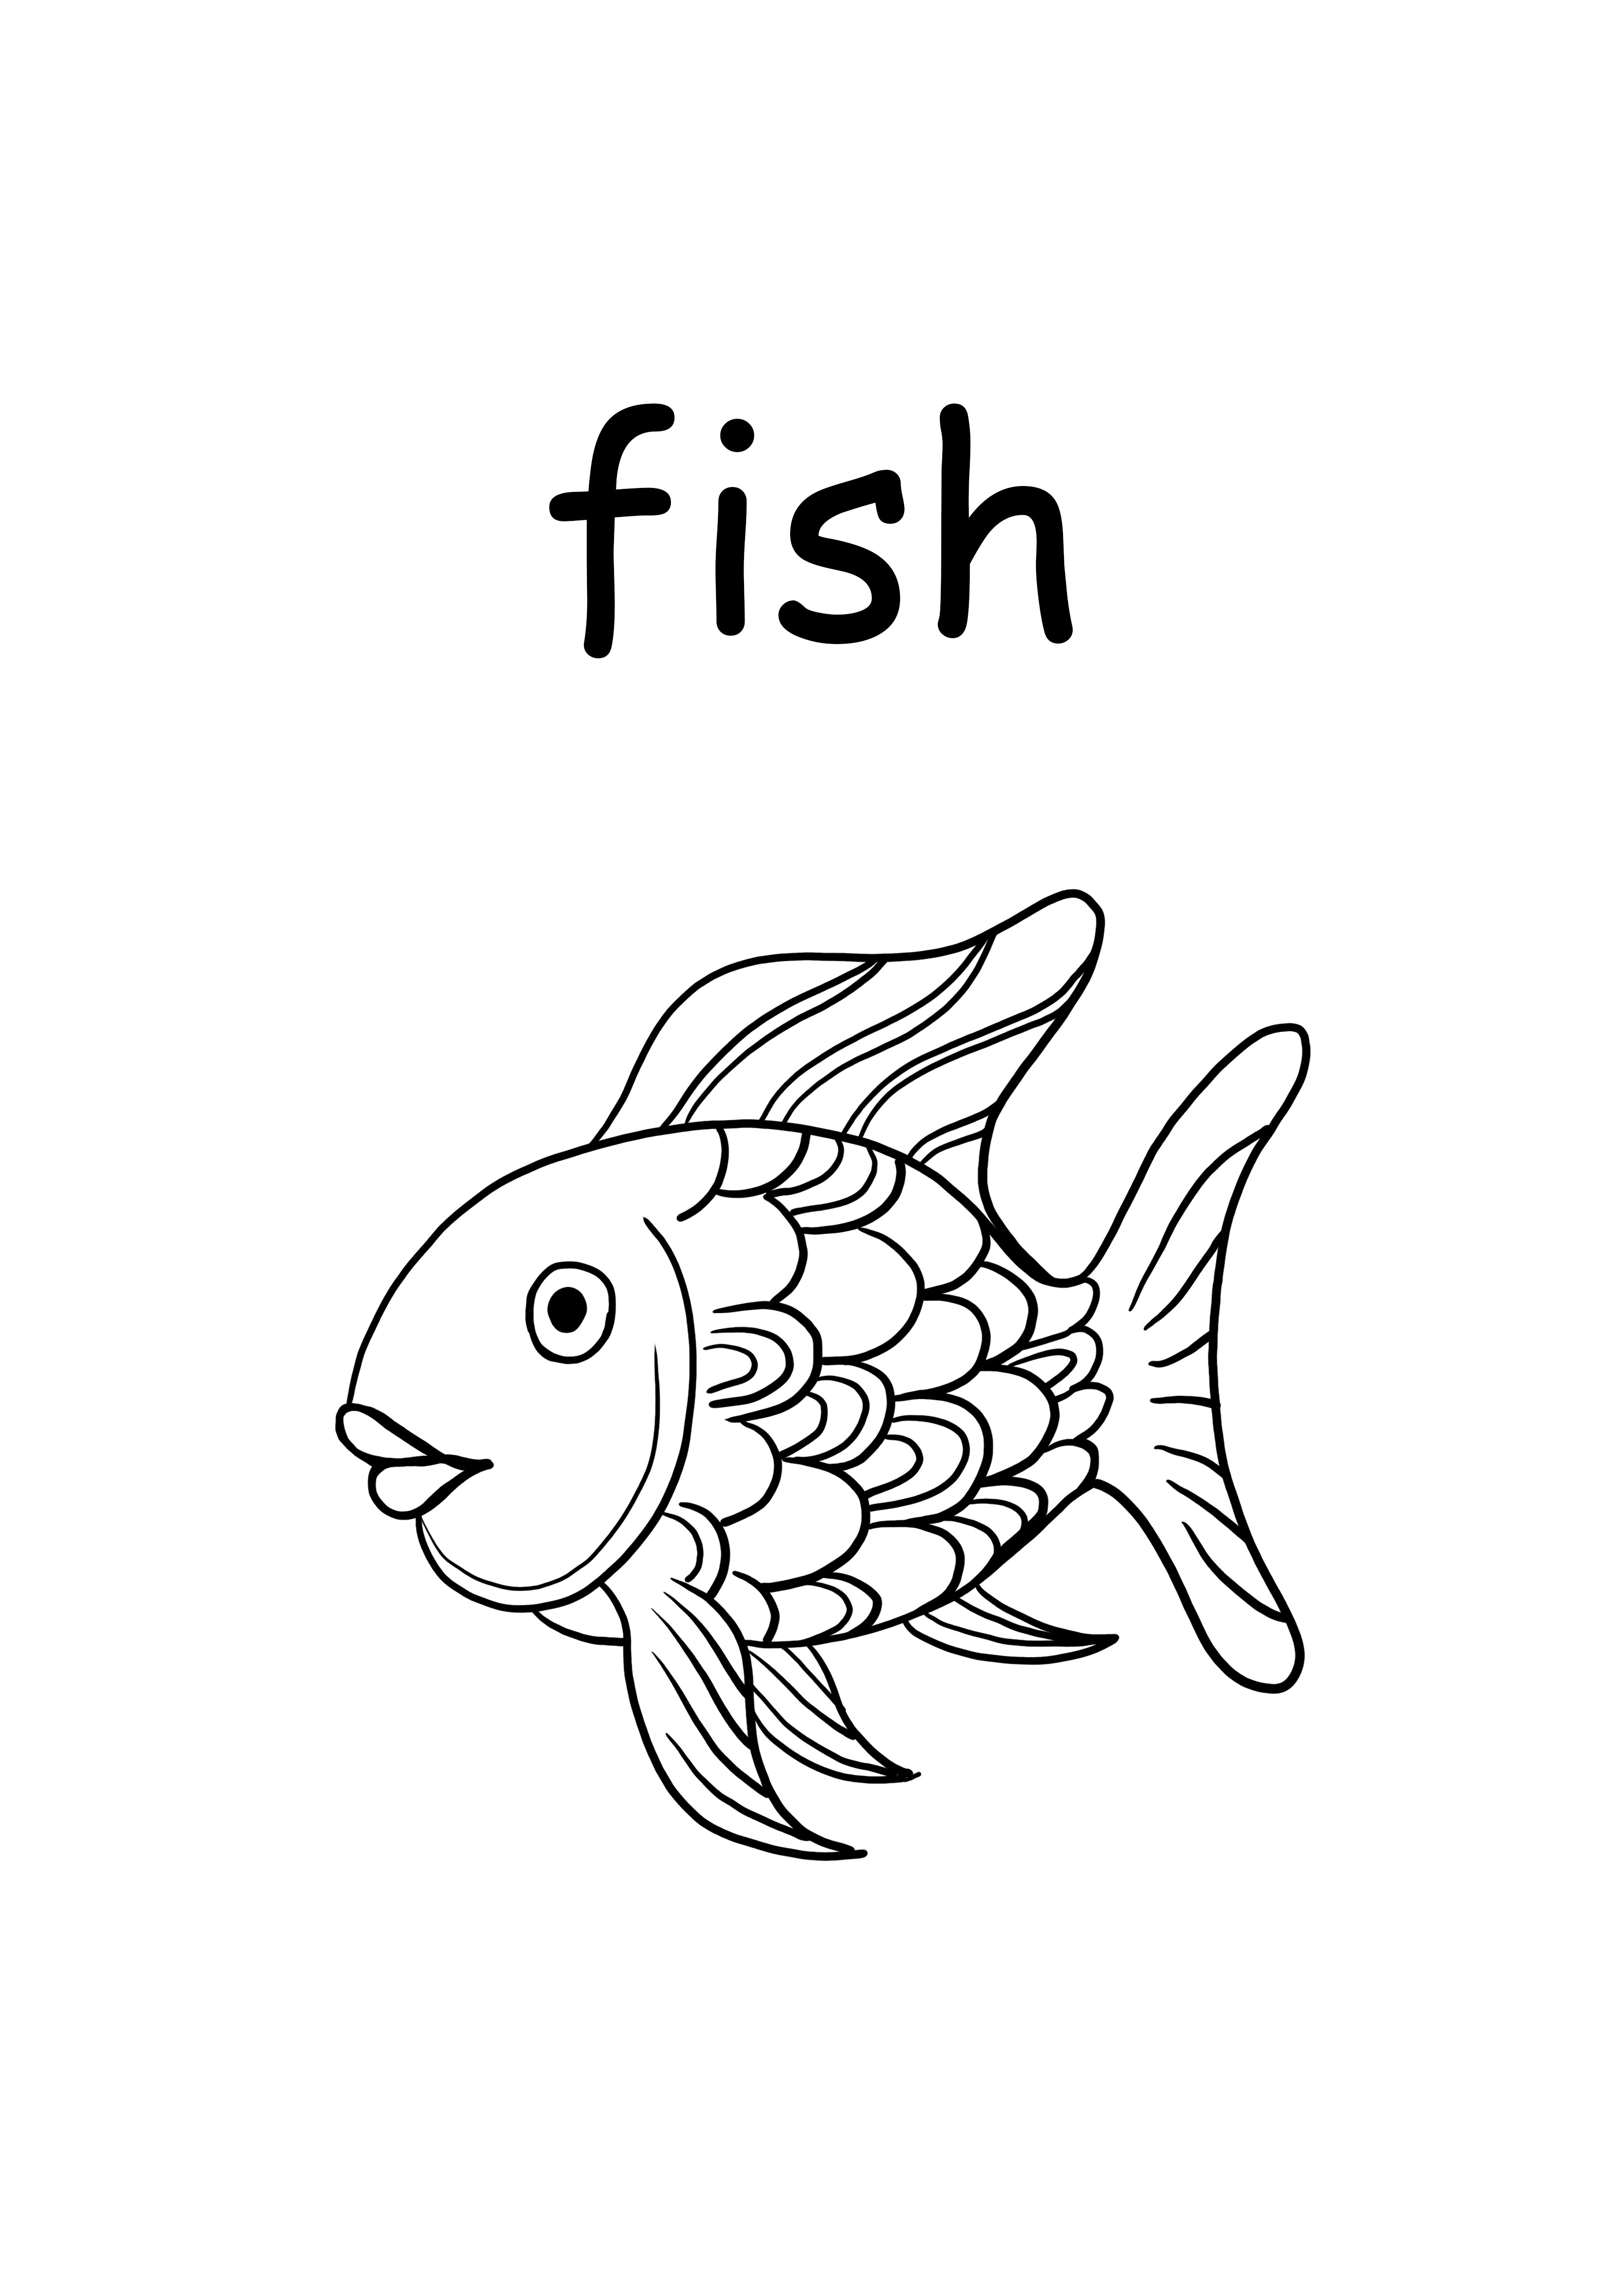 f halak kisbetűs szó nyomtatása és színezése ingyen